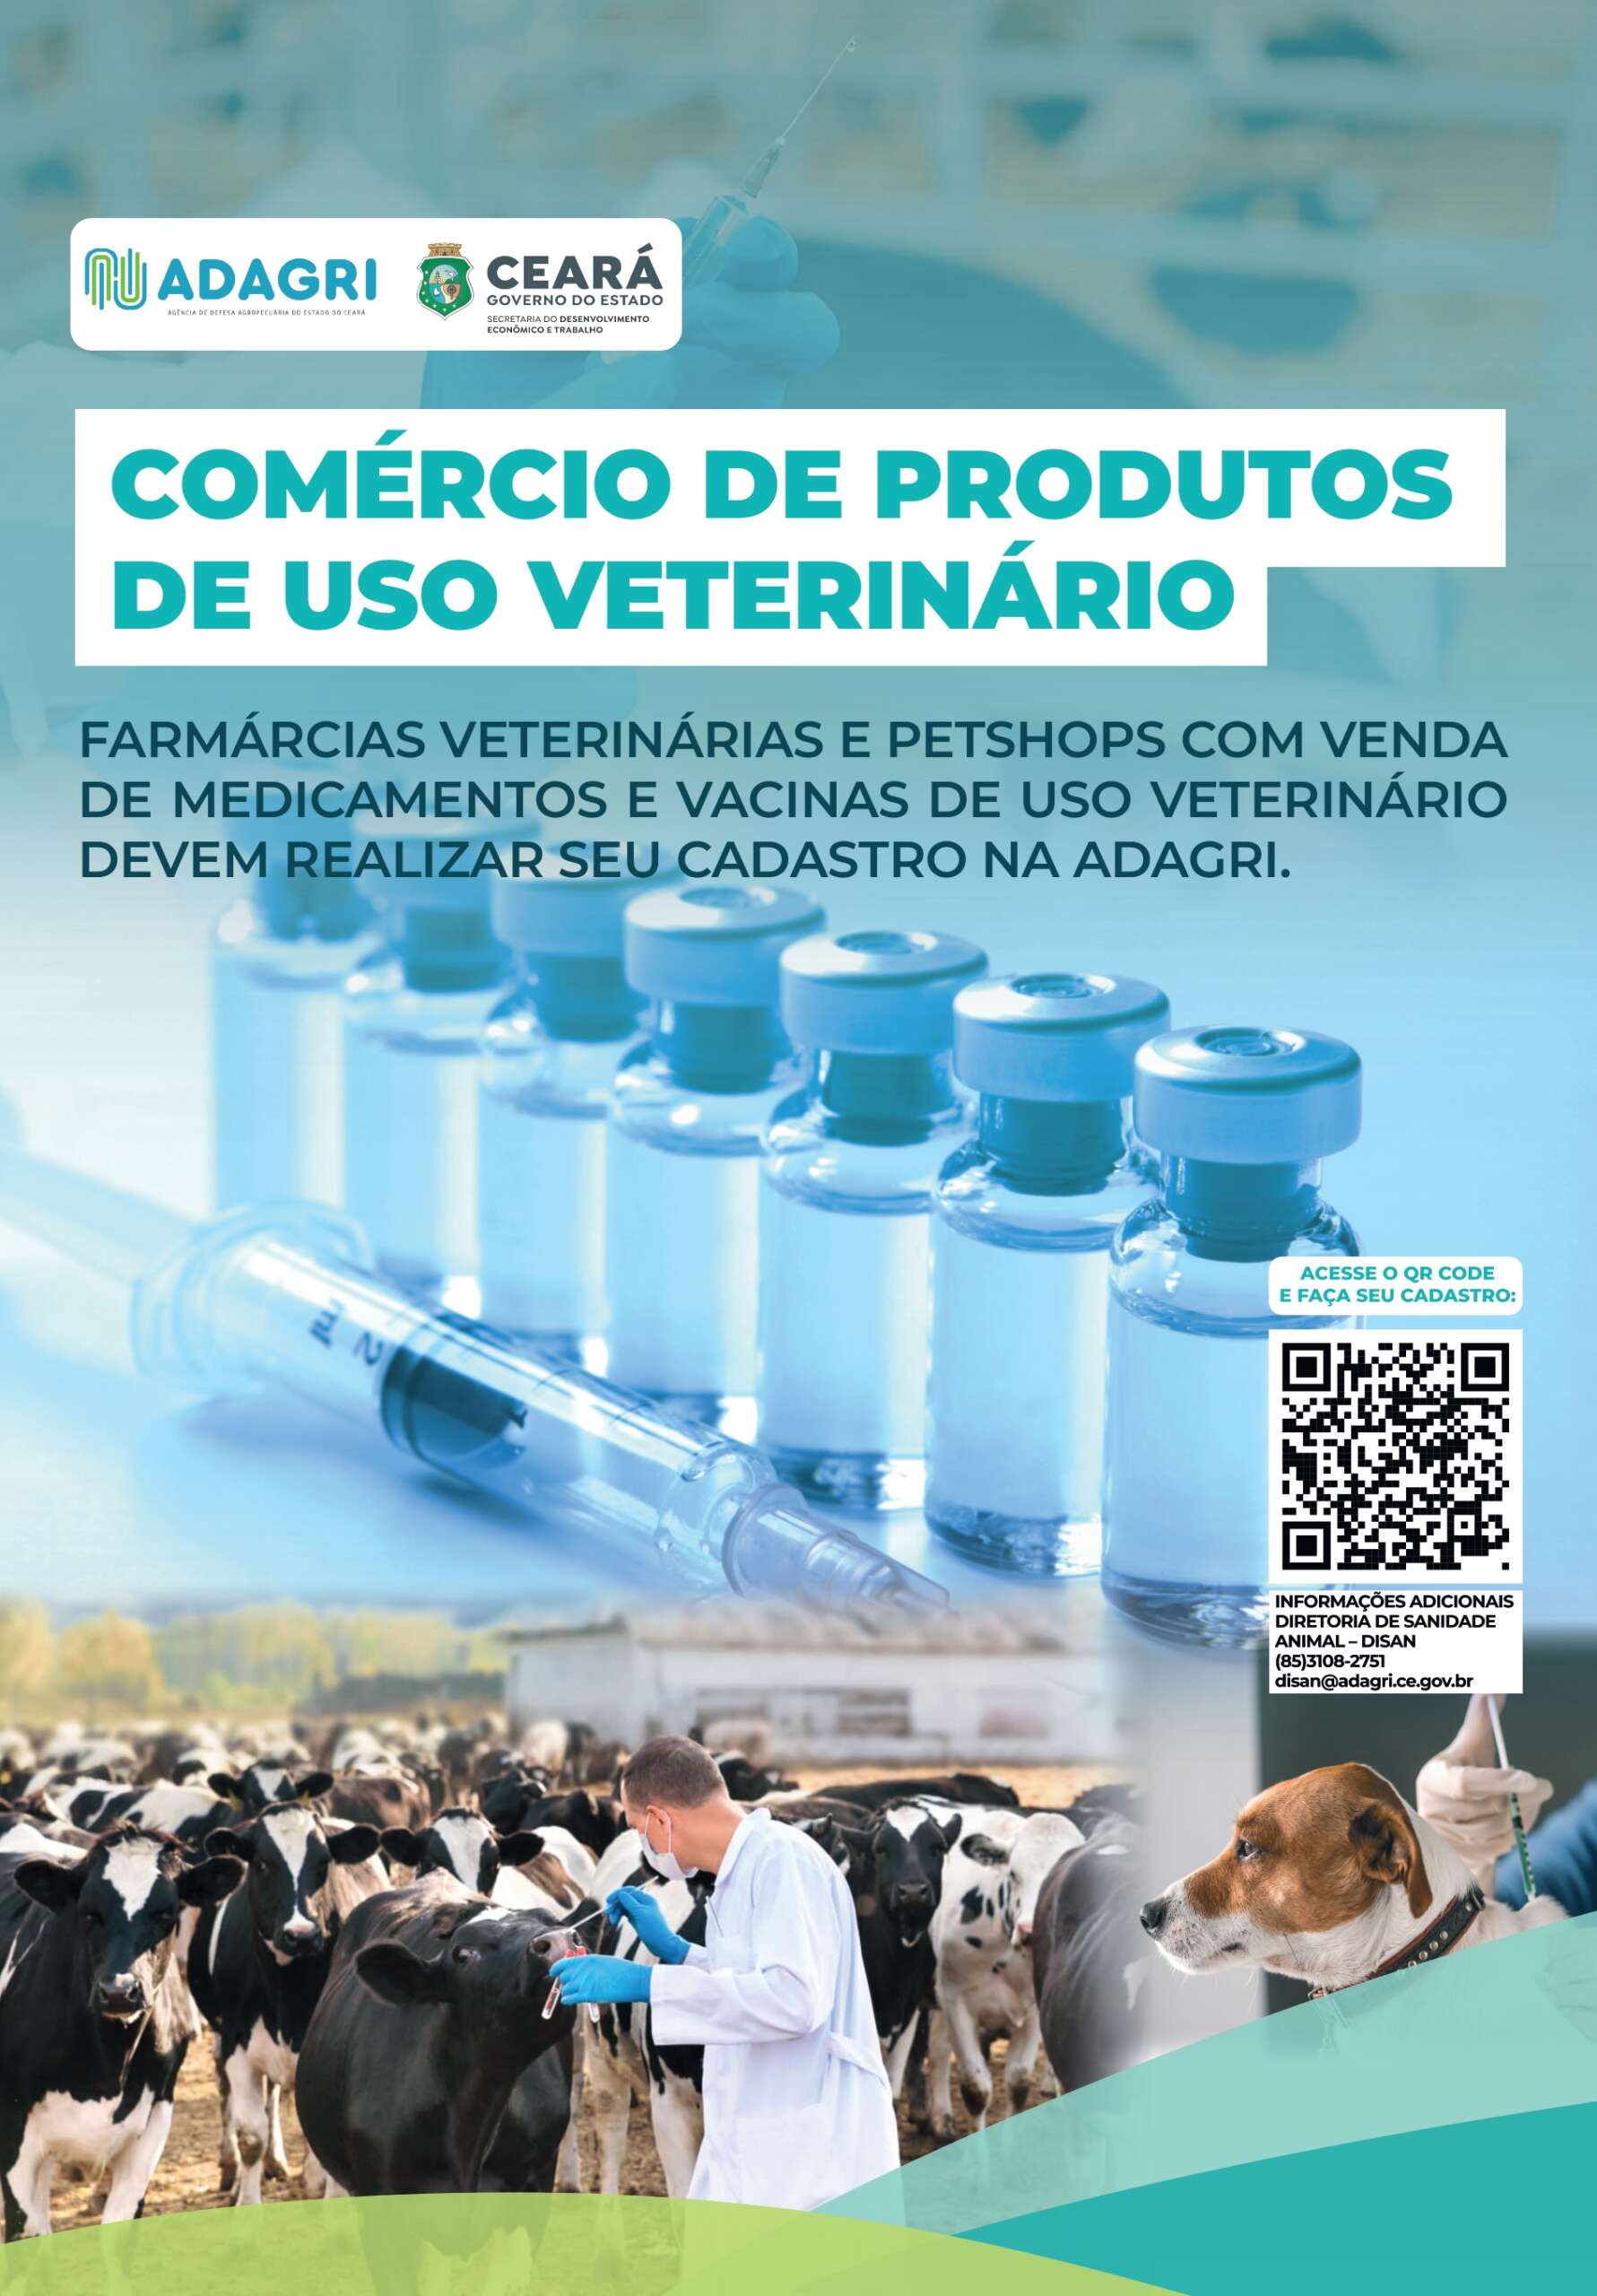 Estabelecimentos que comercializam produtos de uso veterinário devem se cadastrar junto a Adagri